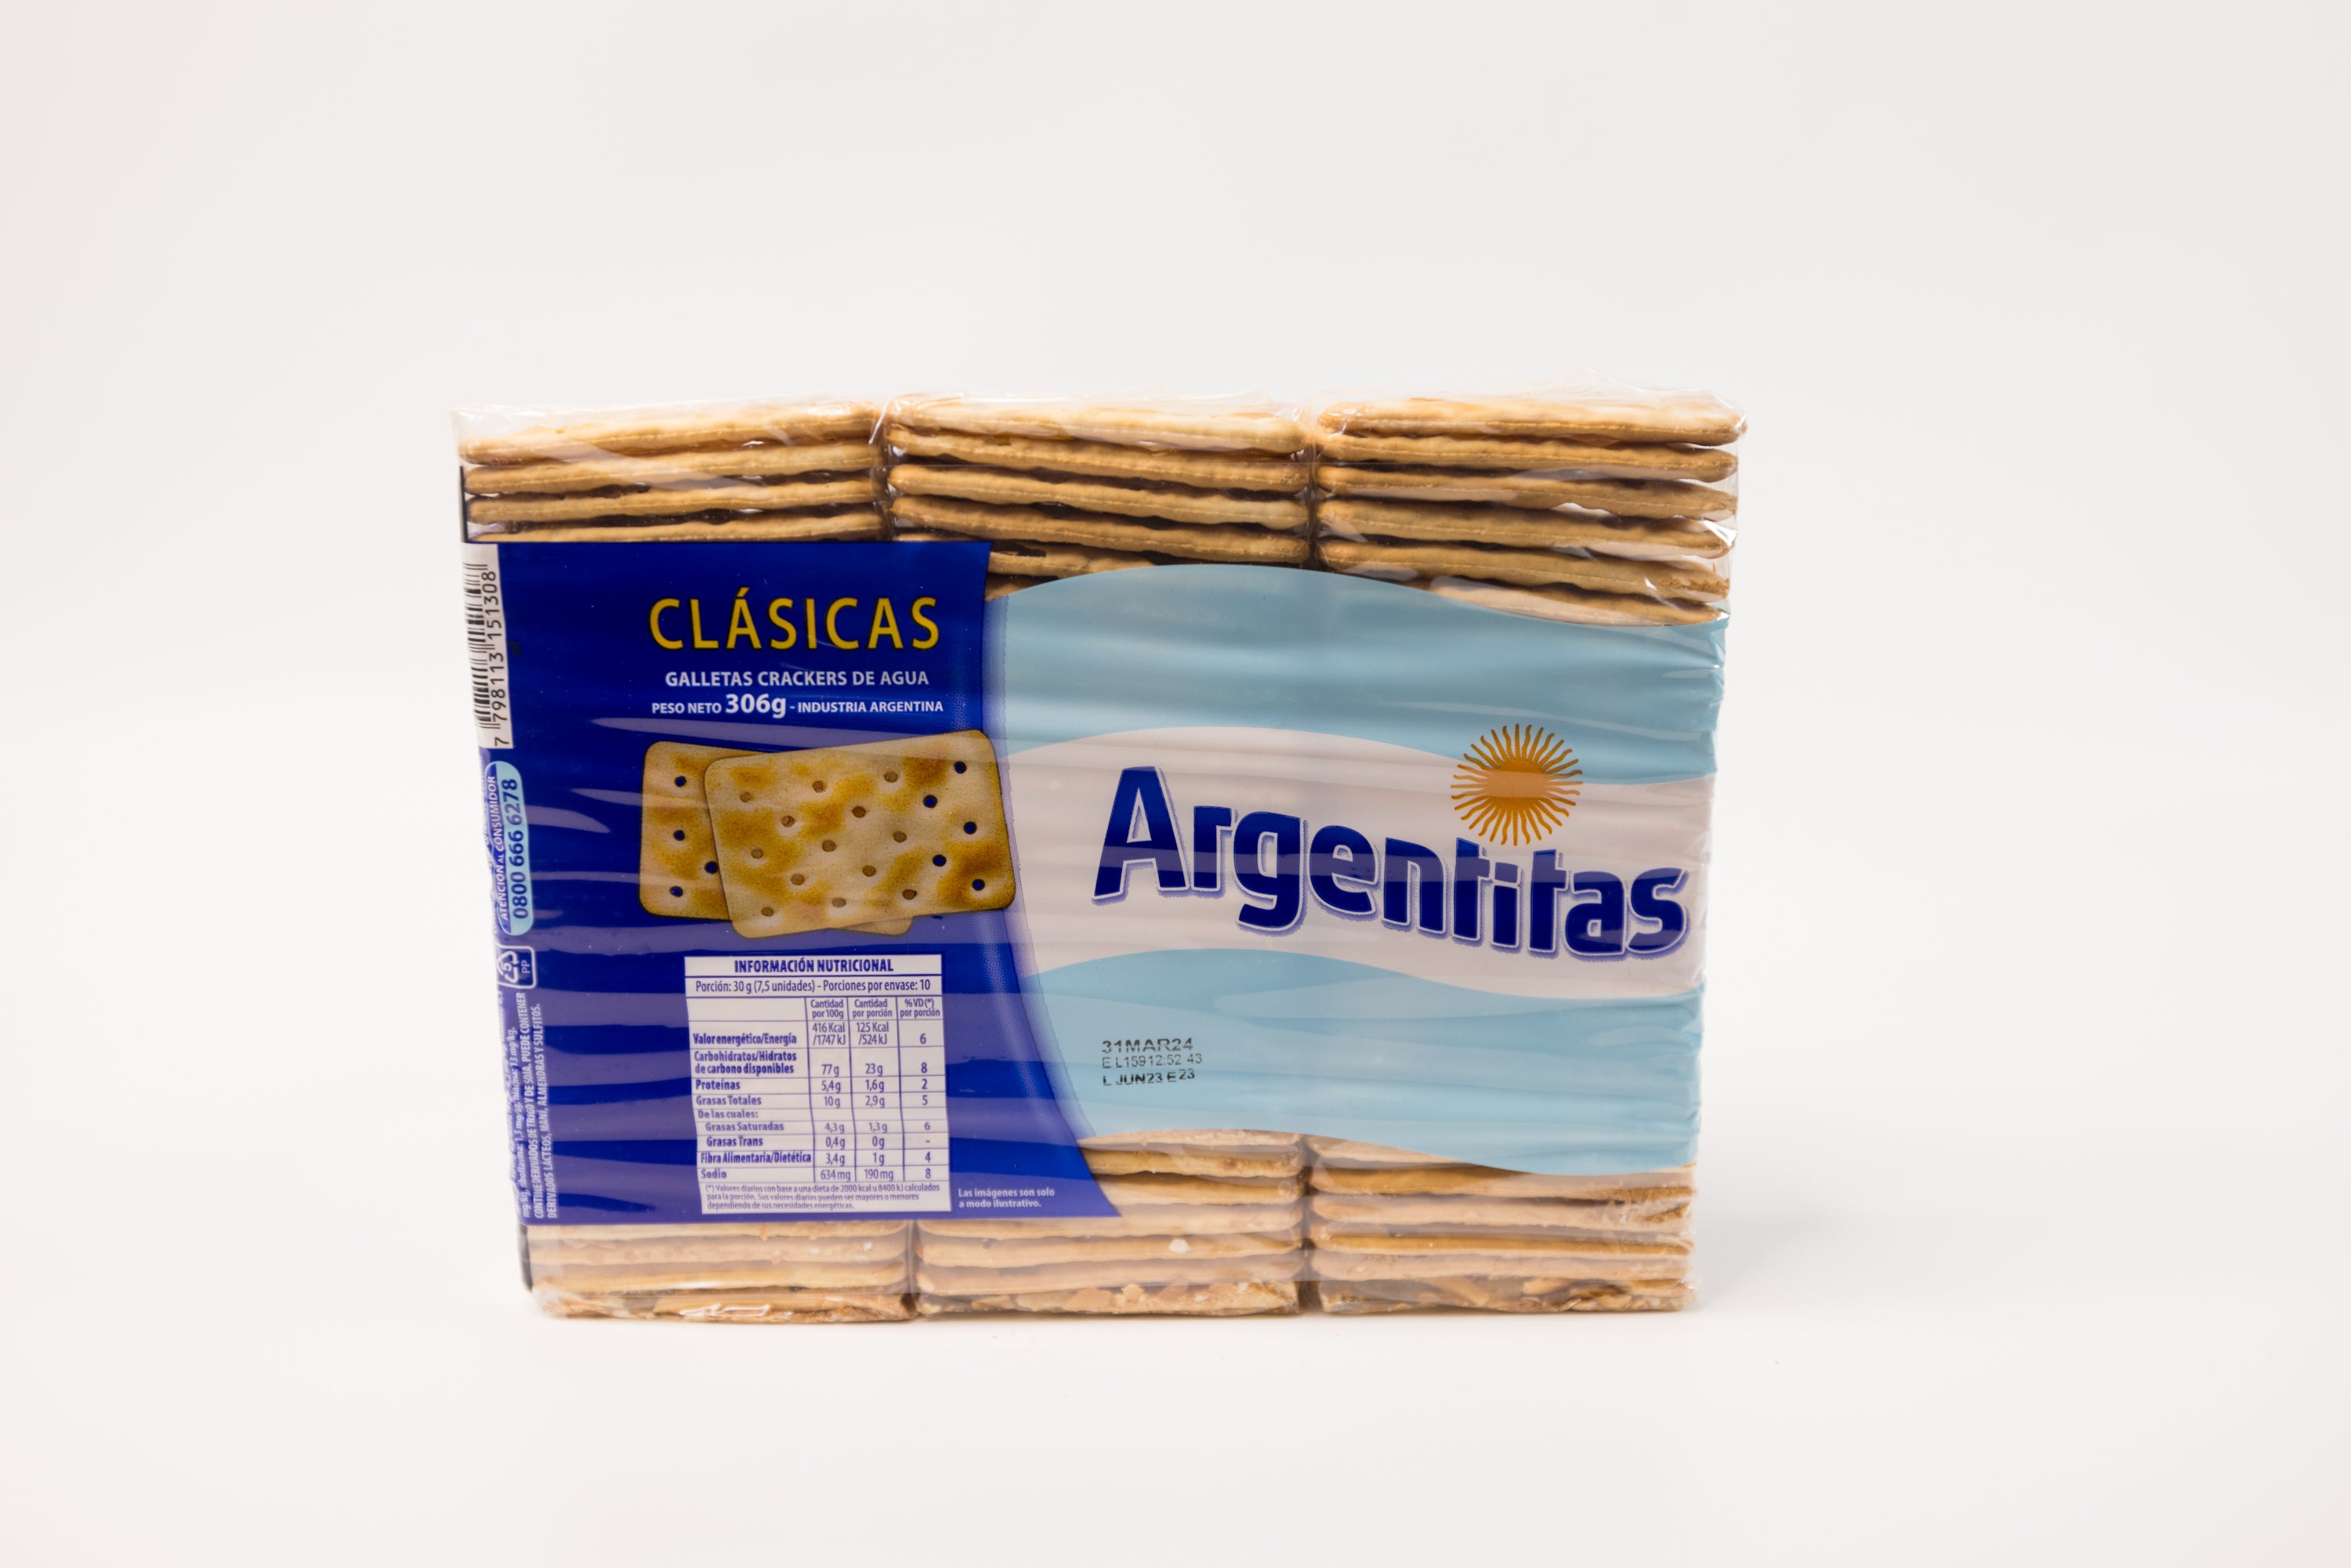 Argentitas Galletas Clasicas 3 Pack